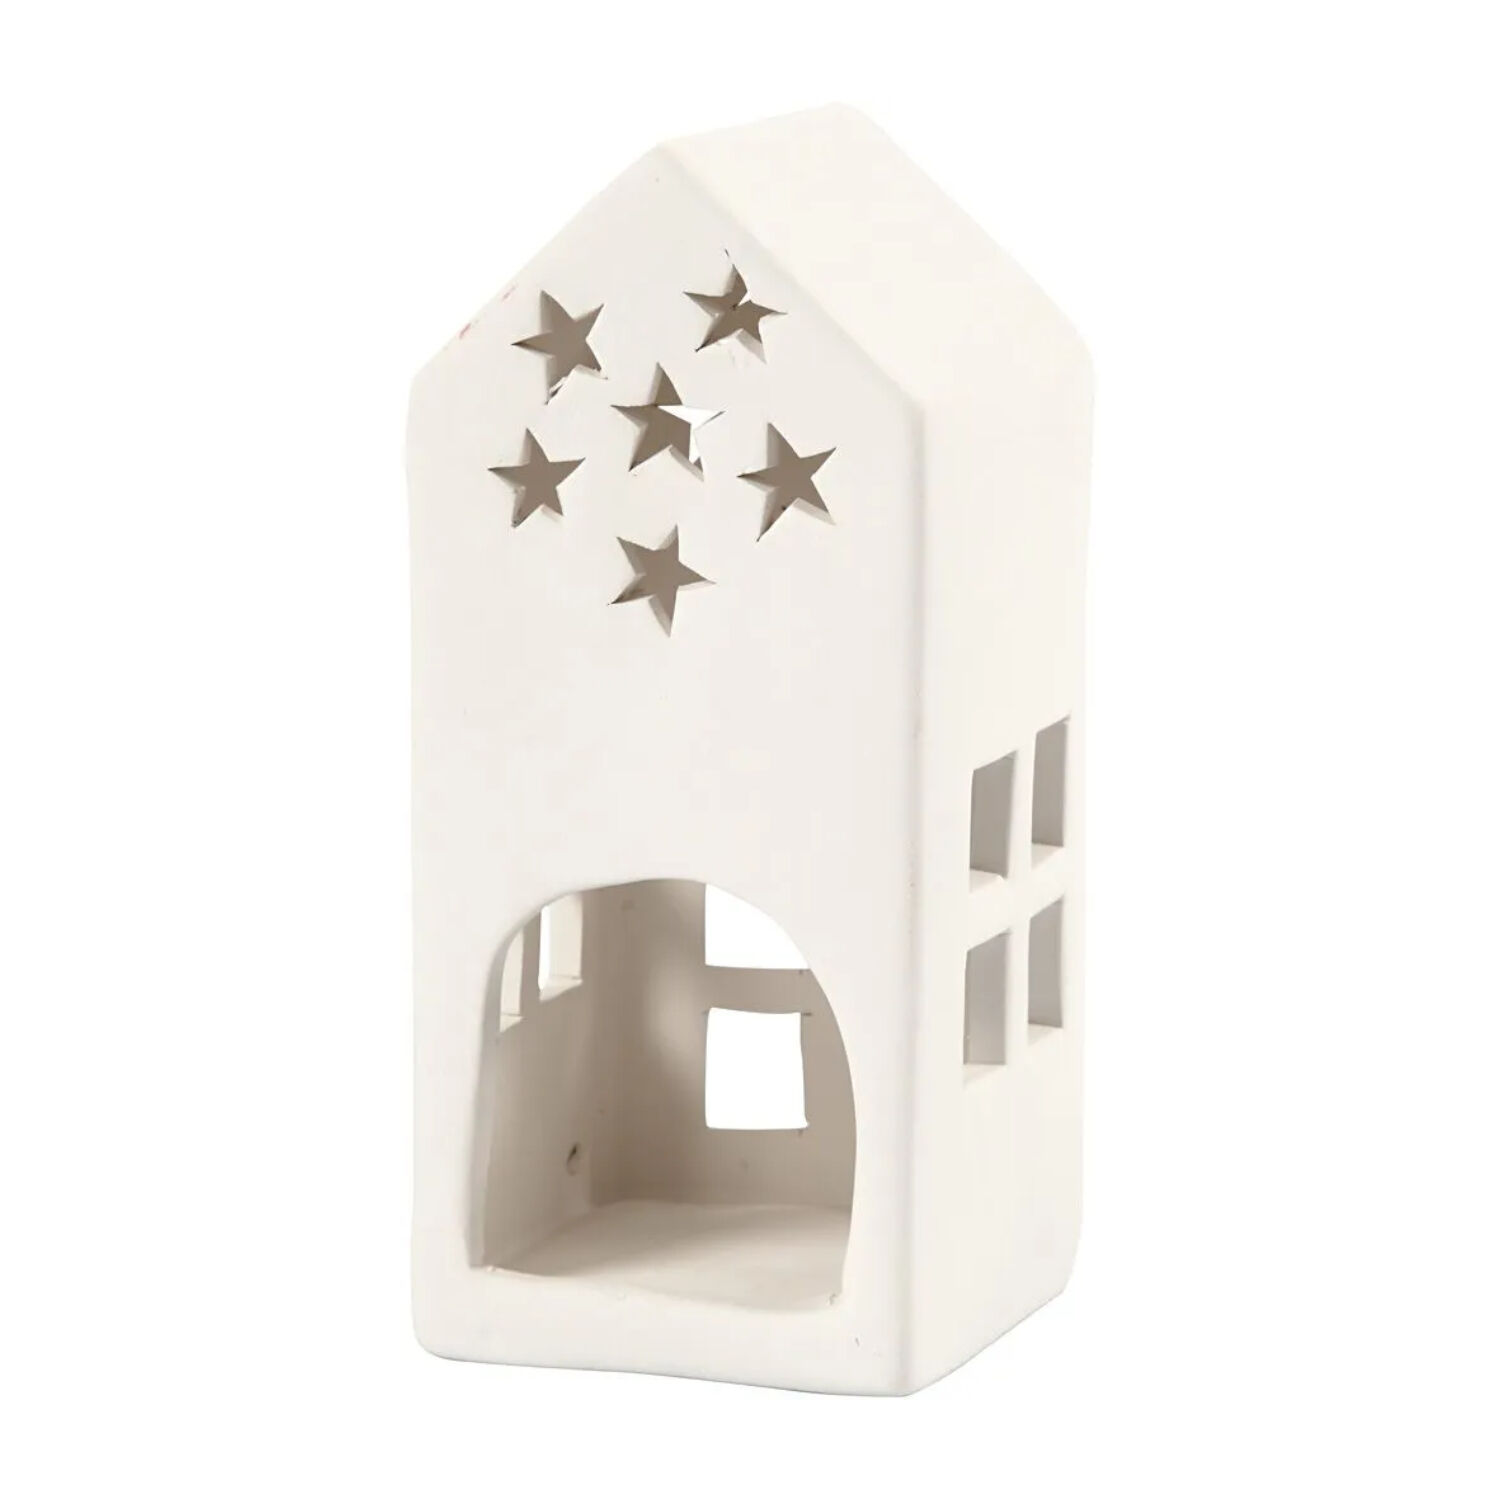 NEU Teelicht-Haus mit Sternen, Terrakotta-Wei, Gre 7x7x16 cm, 1 Stck Bild 2